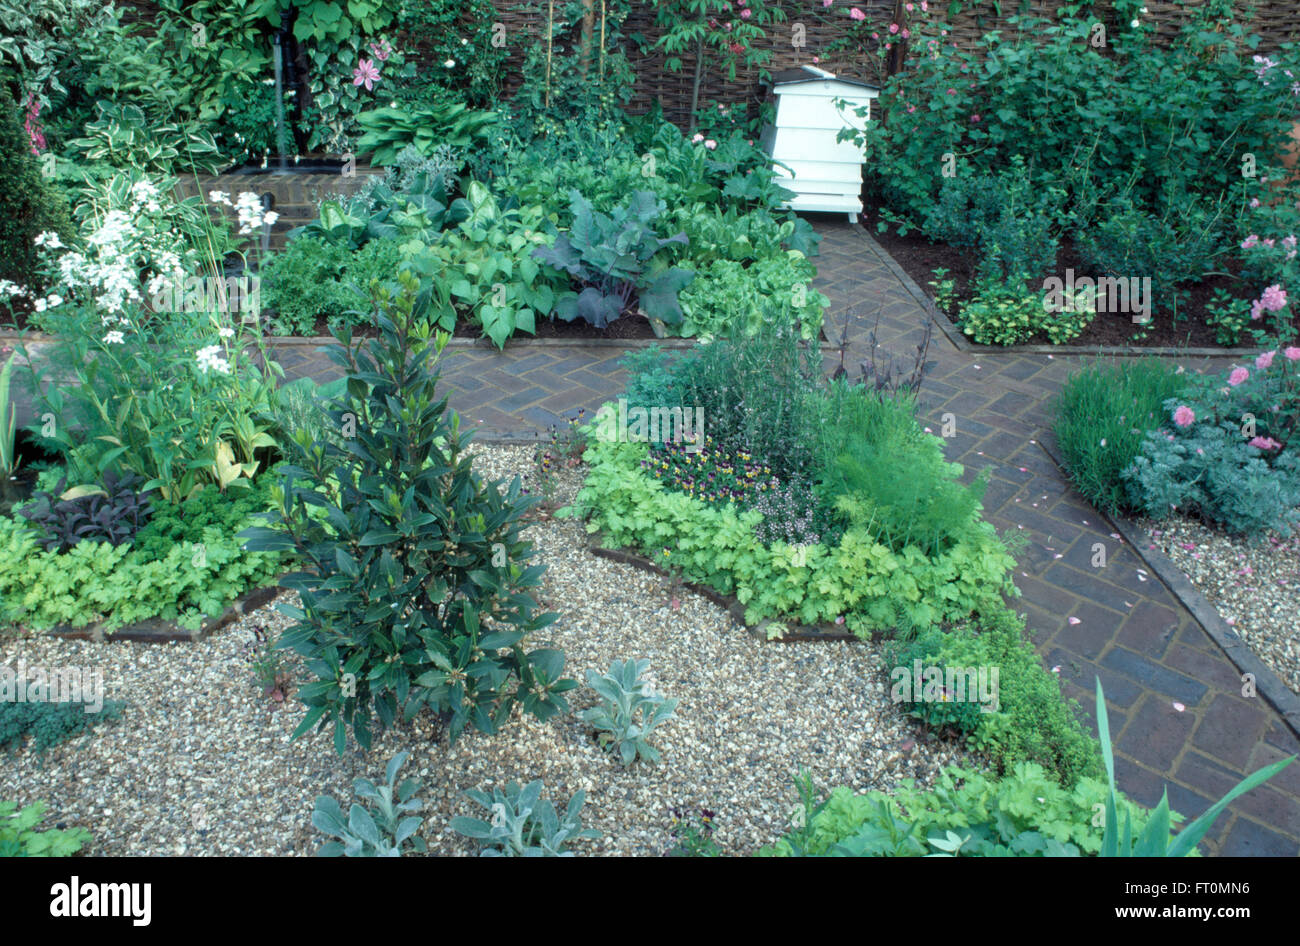 Lorbeerbaum in Kies Grundstück in einem kleinen formalen Potager Garten mit Kräutern und Fischgräten Ziegel Pfade und einem weißen Bienenstock Stockfoto